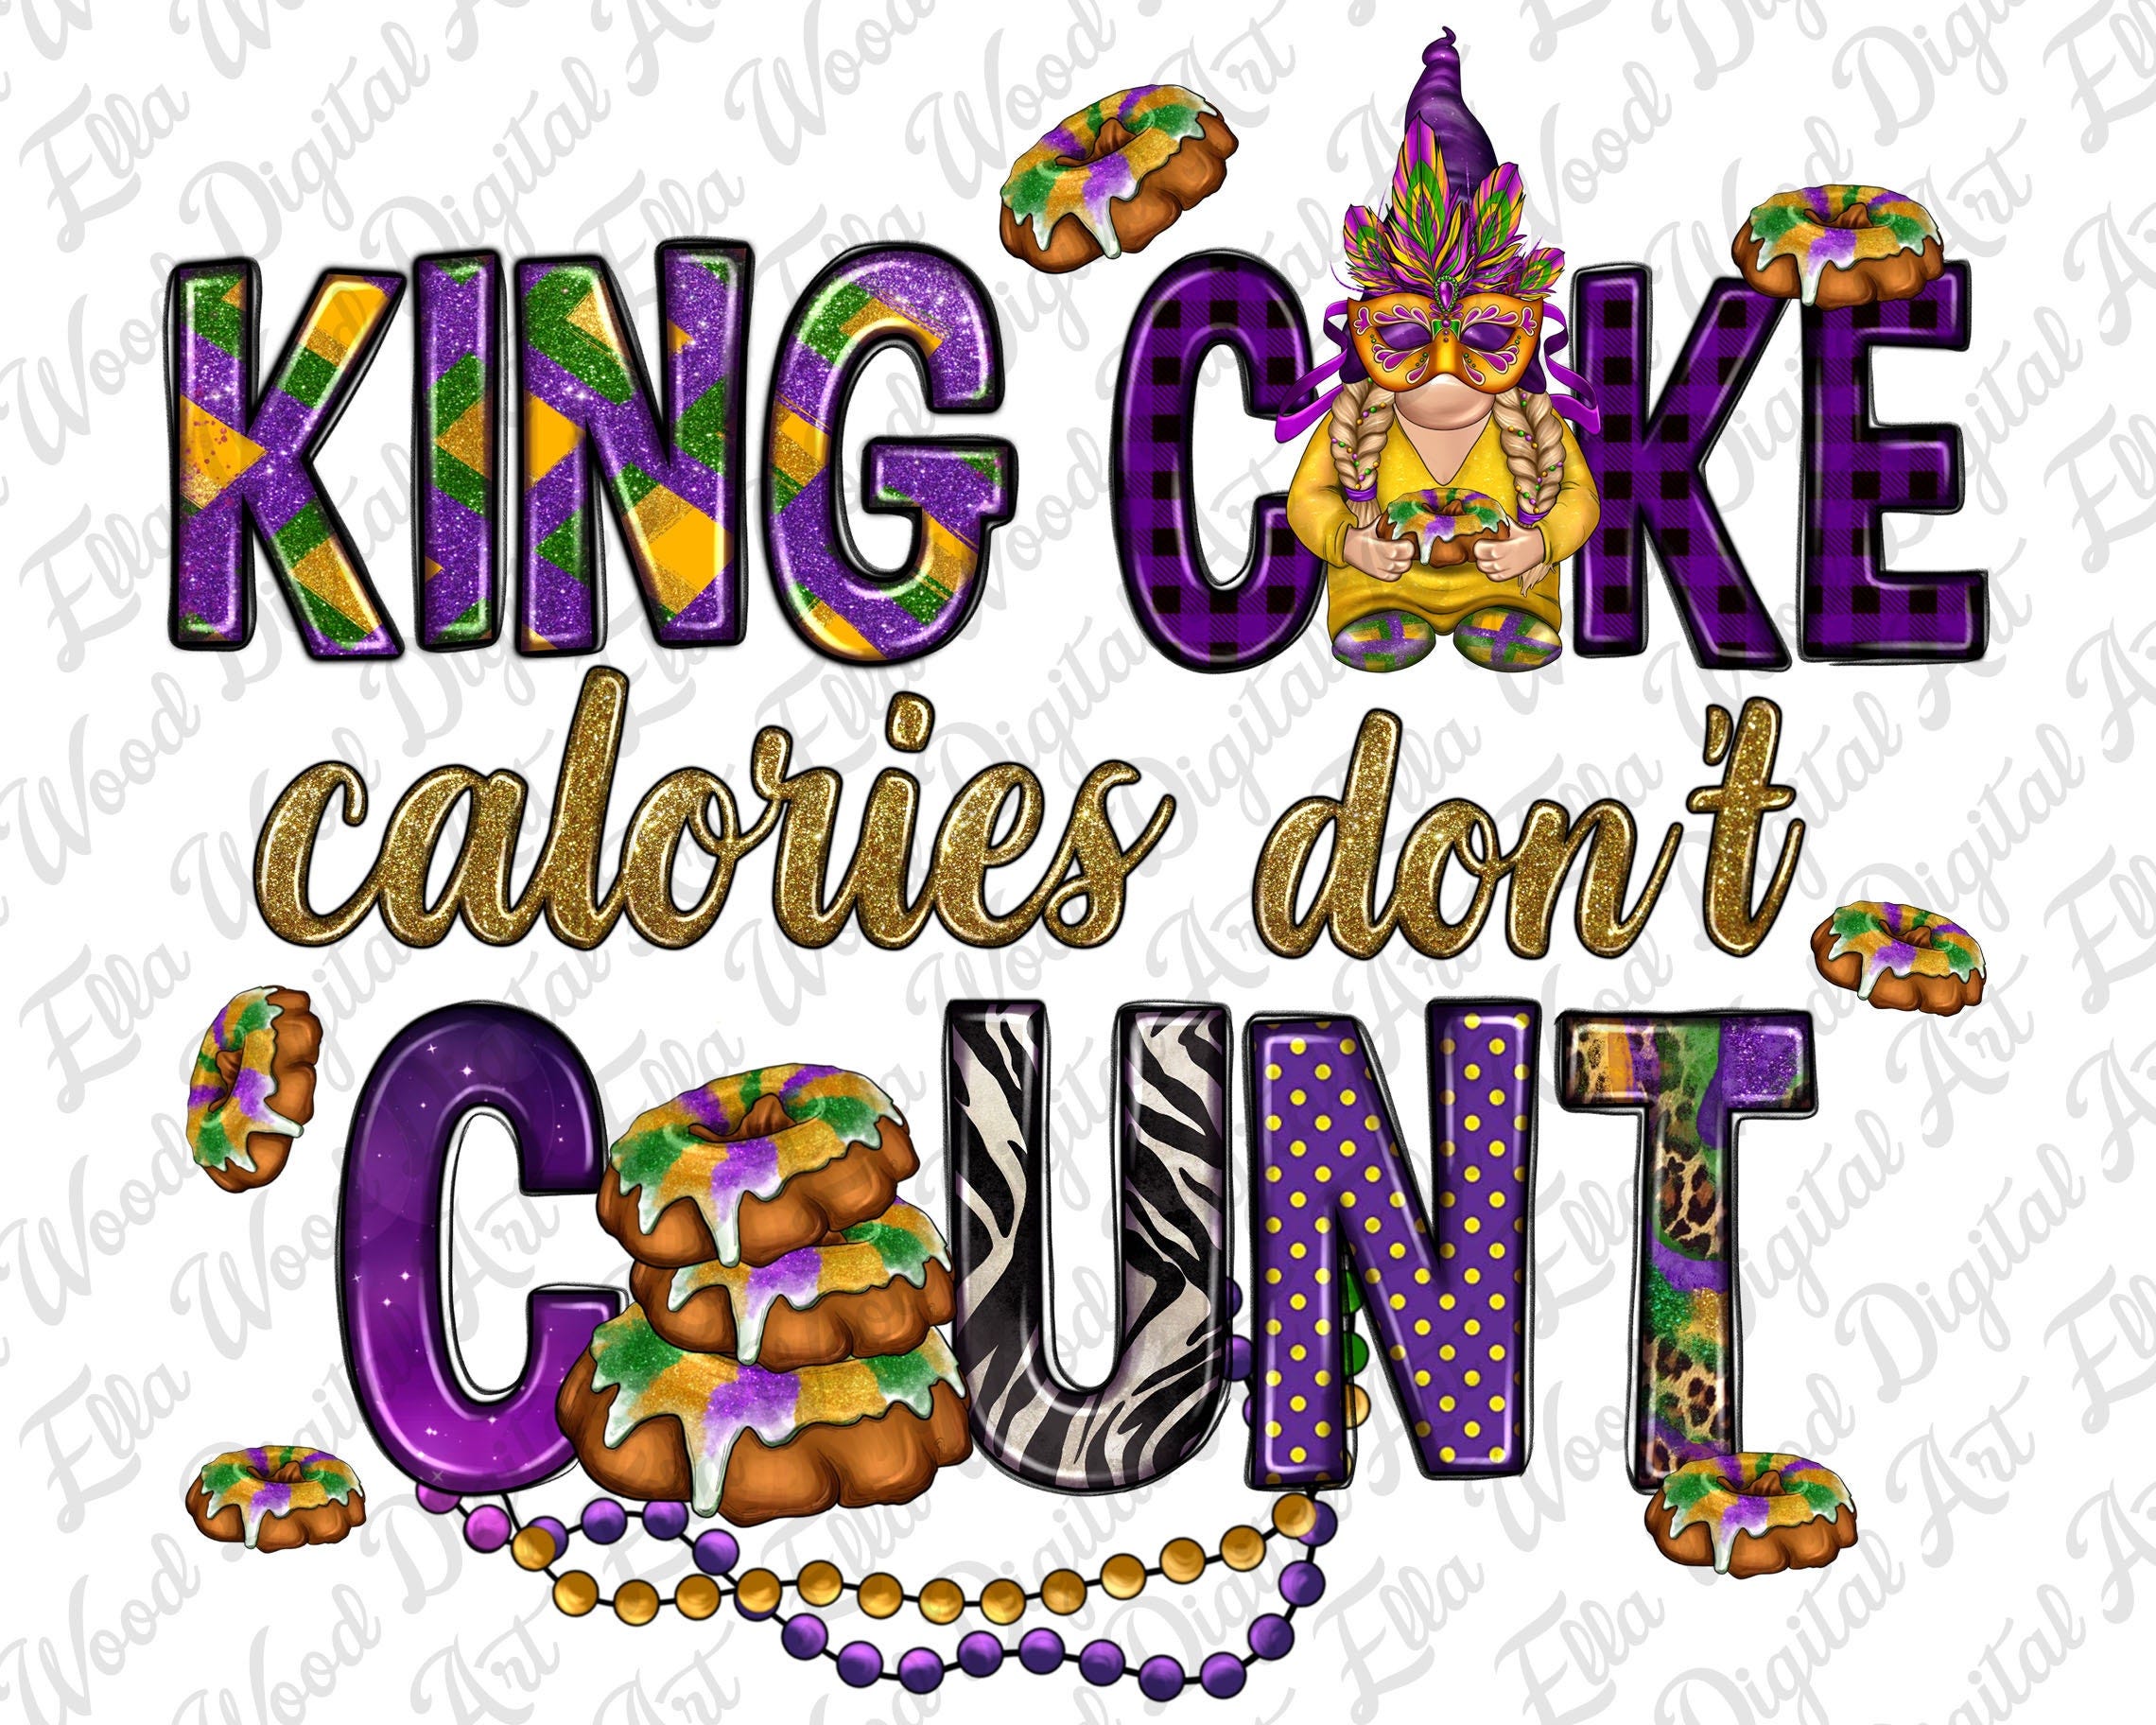 King cake calories don